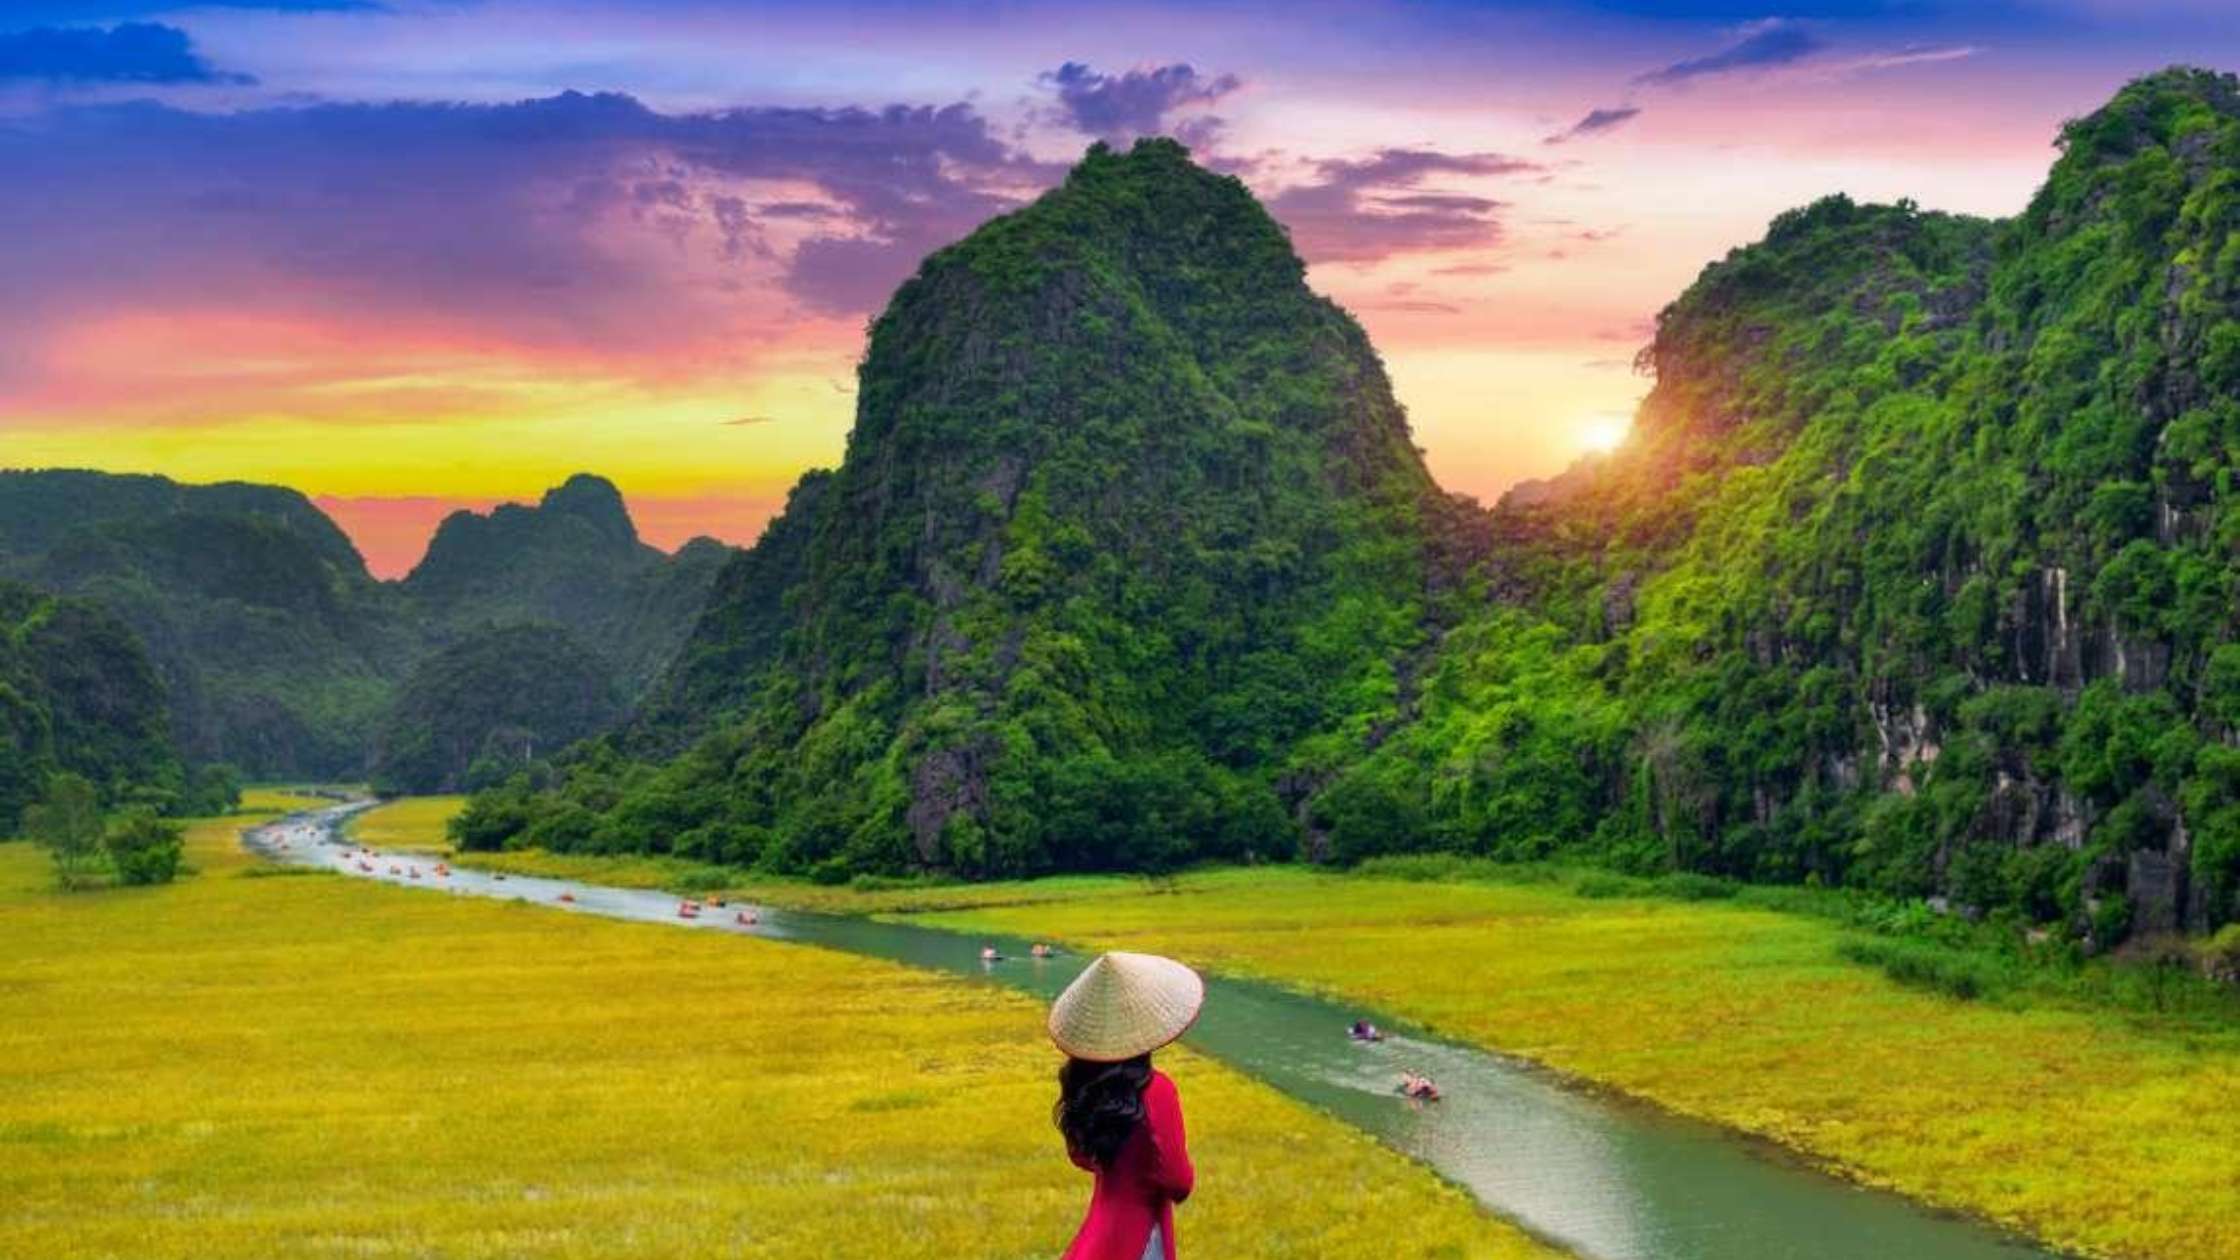 ietnam’s Land Law Overhaul